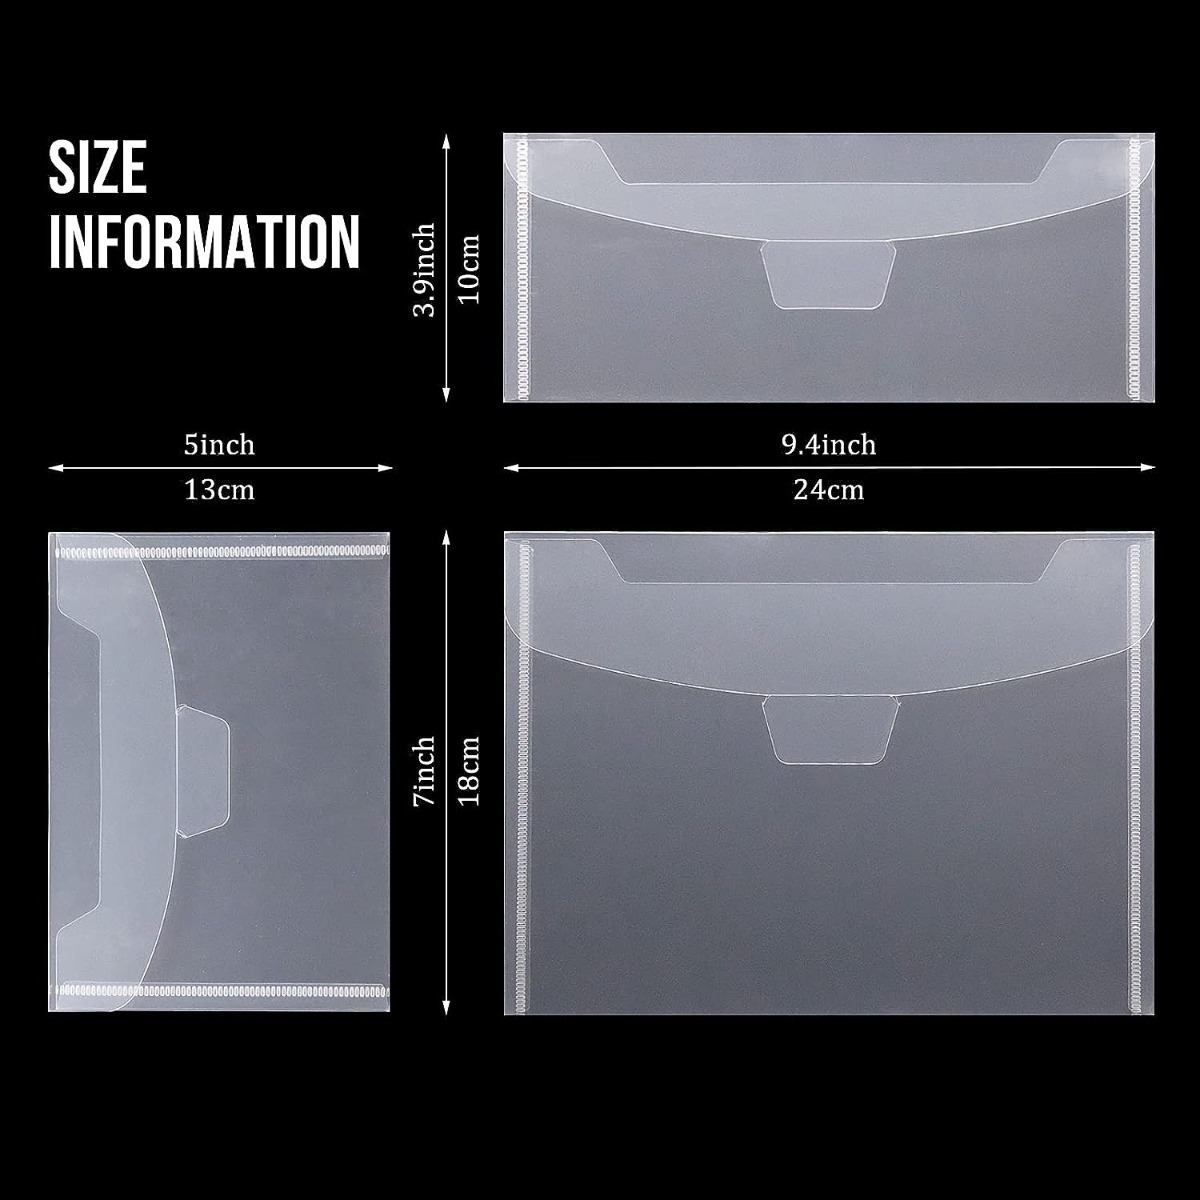 Clear Stamp Die Plastic Storage Bag With 30 Labels - Temu